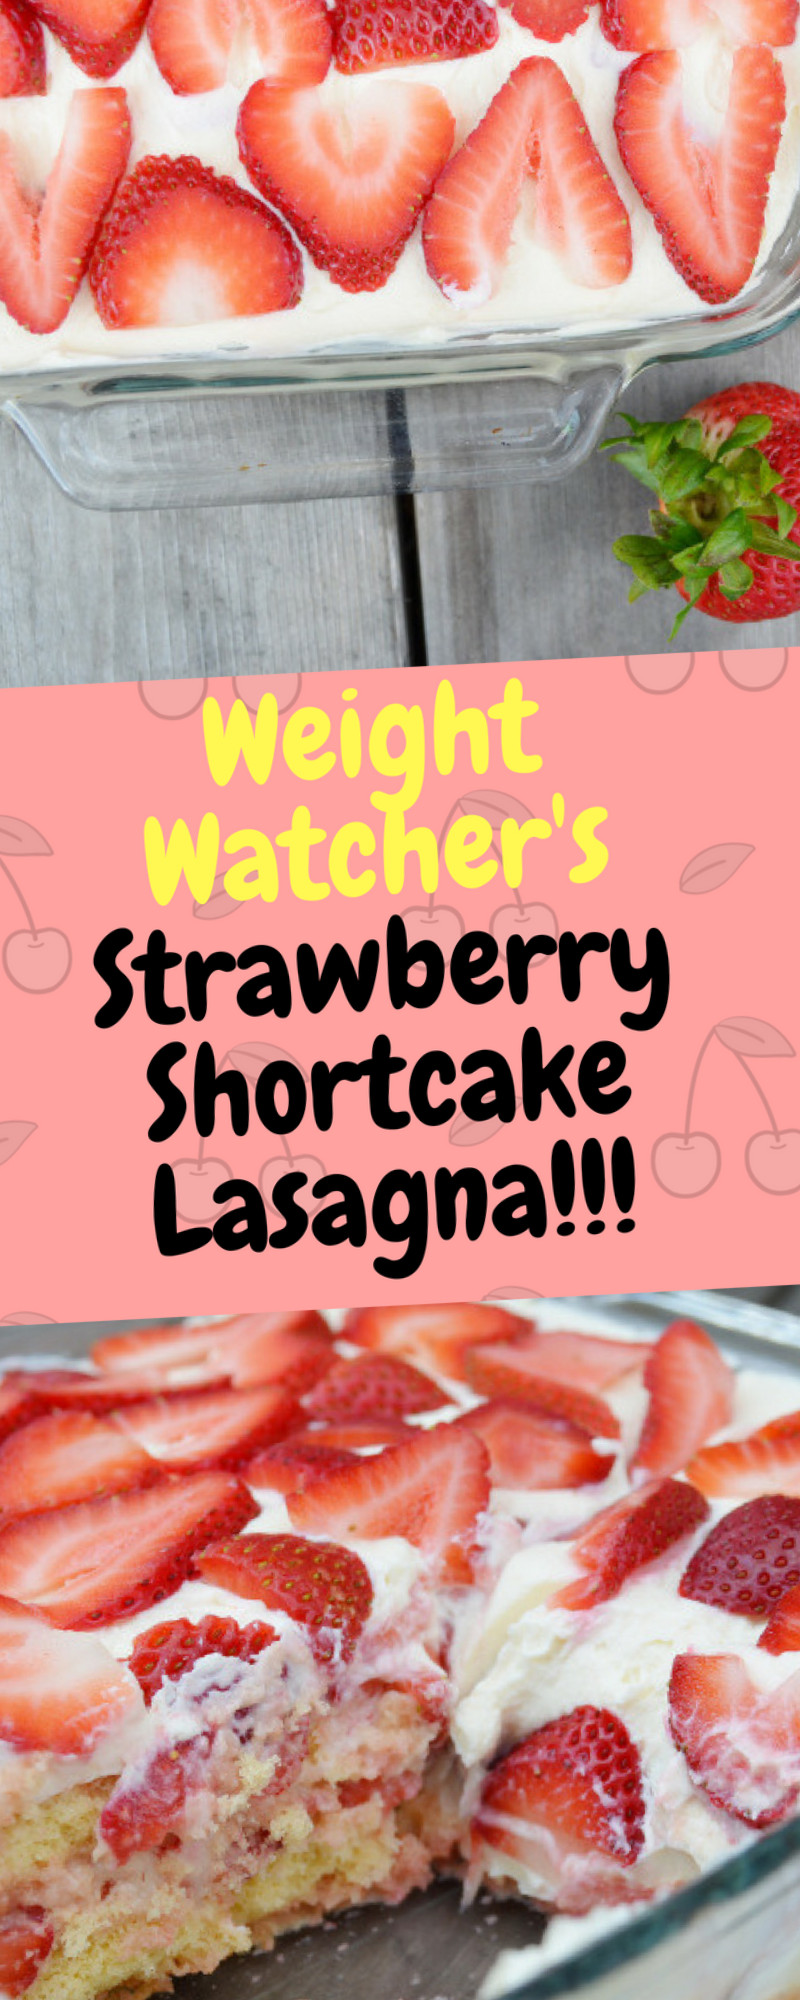 Weight Watcher Strawberry Shortcake
 Weight Watchers Strawberry Shortcake Lasagna – e Recipe